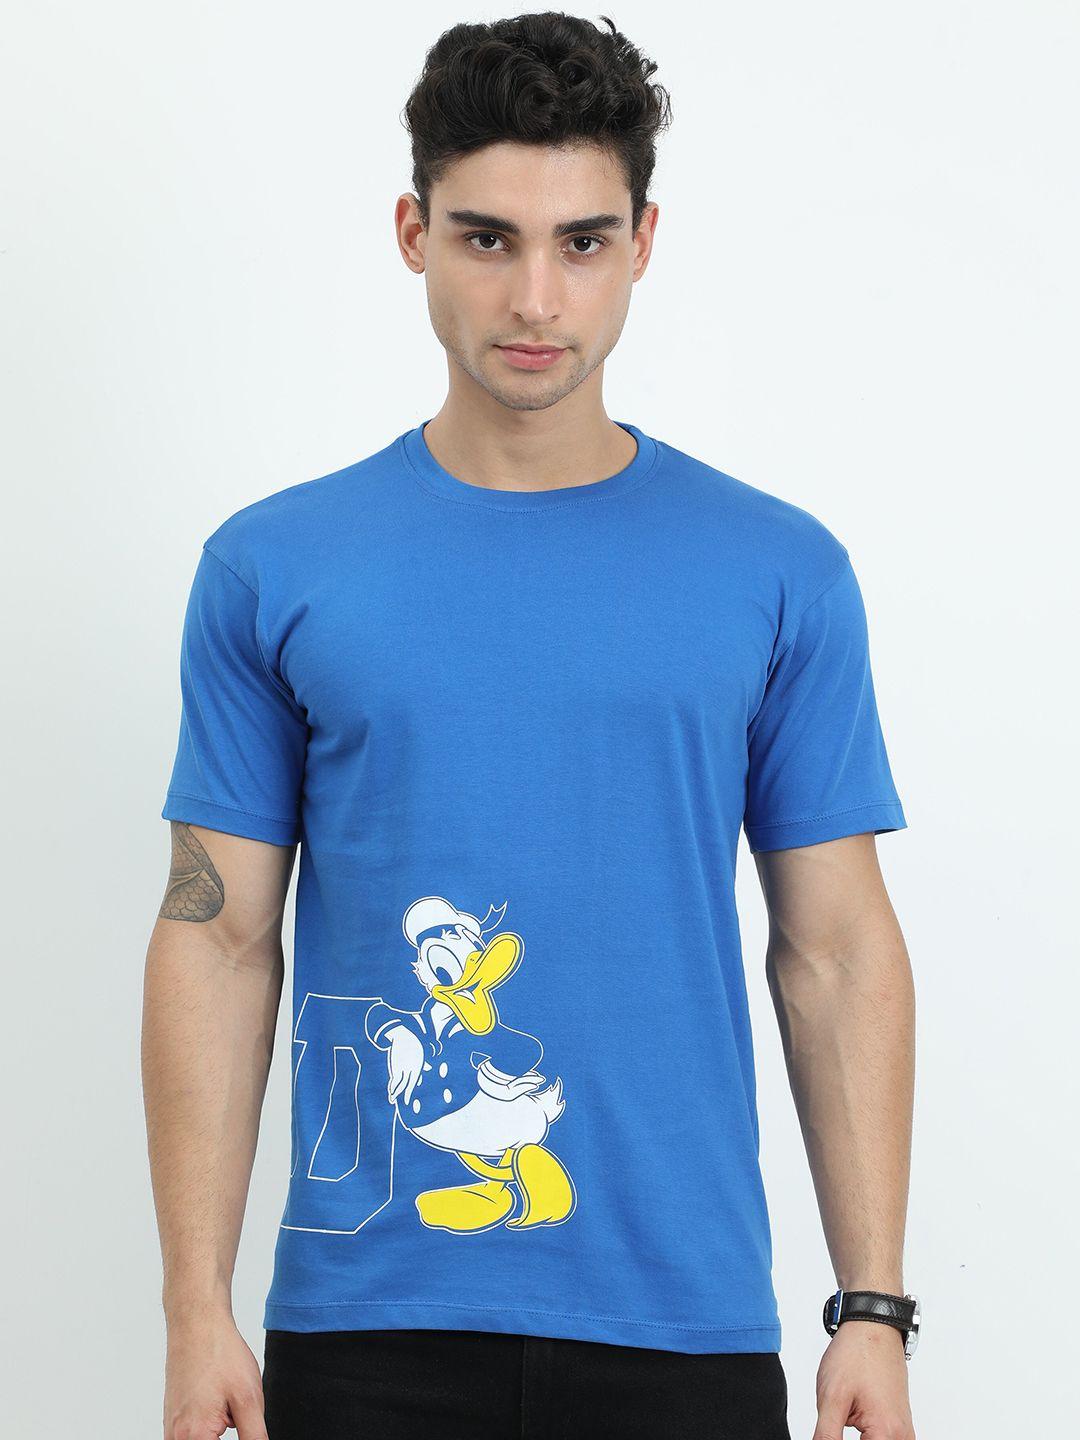 cooft men blue donald duck printed pure cotton applique t-shirt